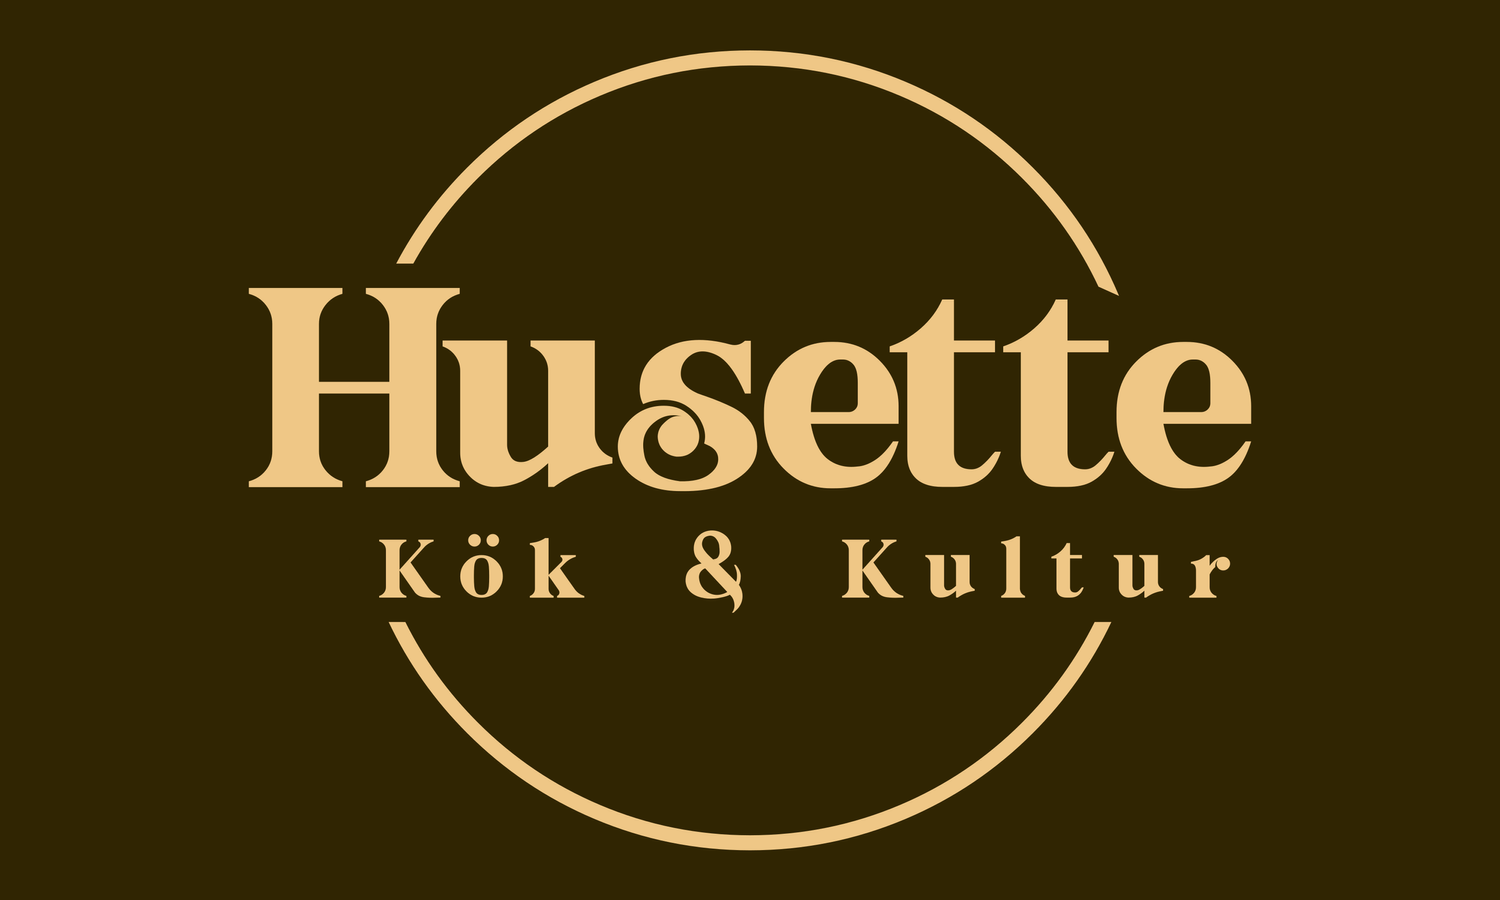 Husette